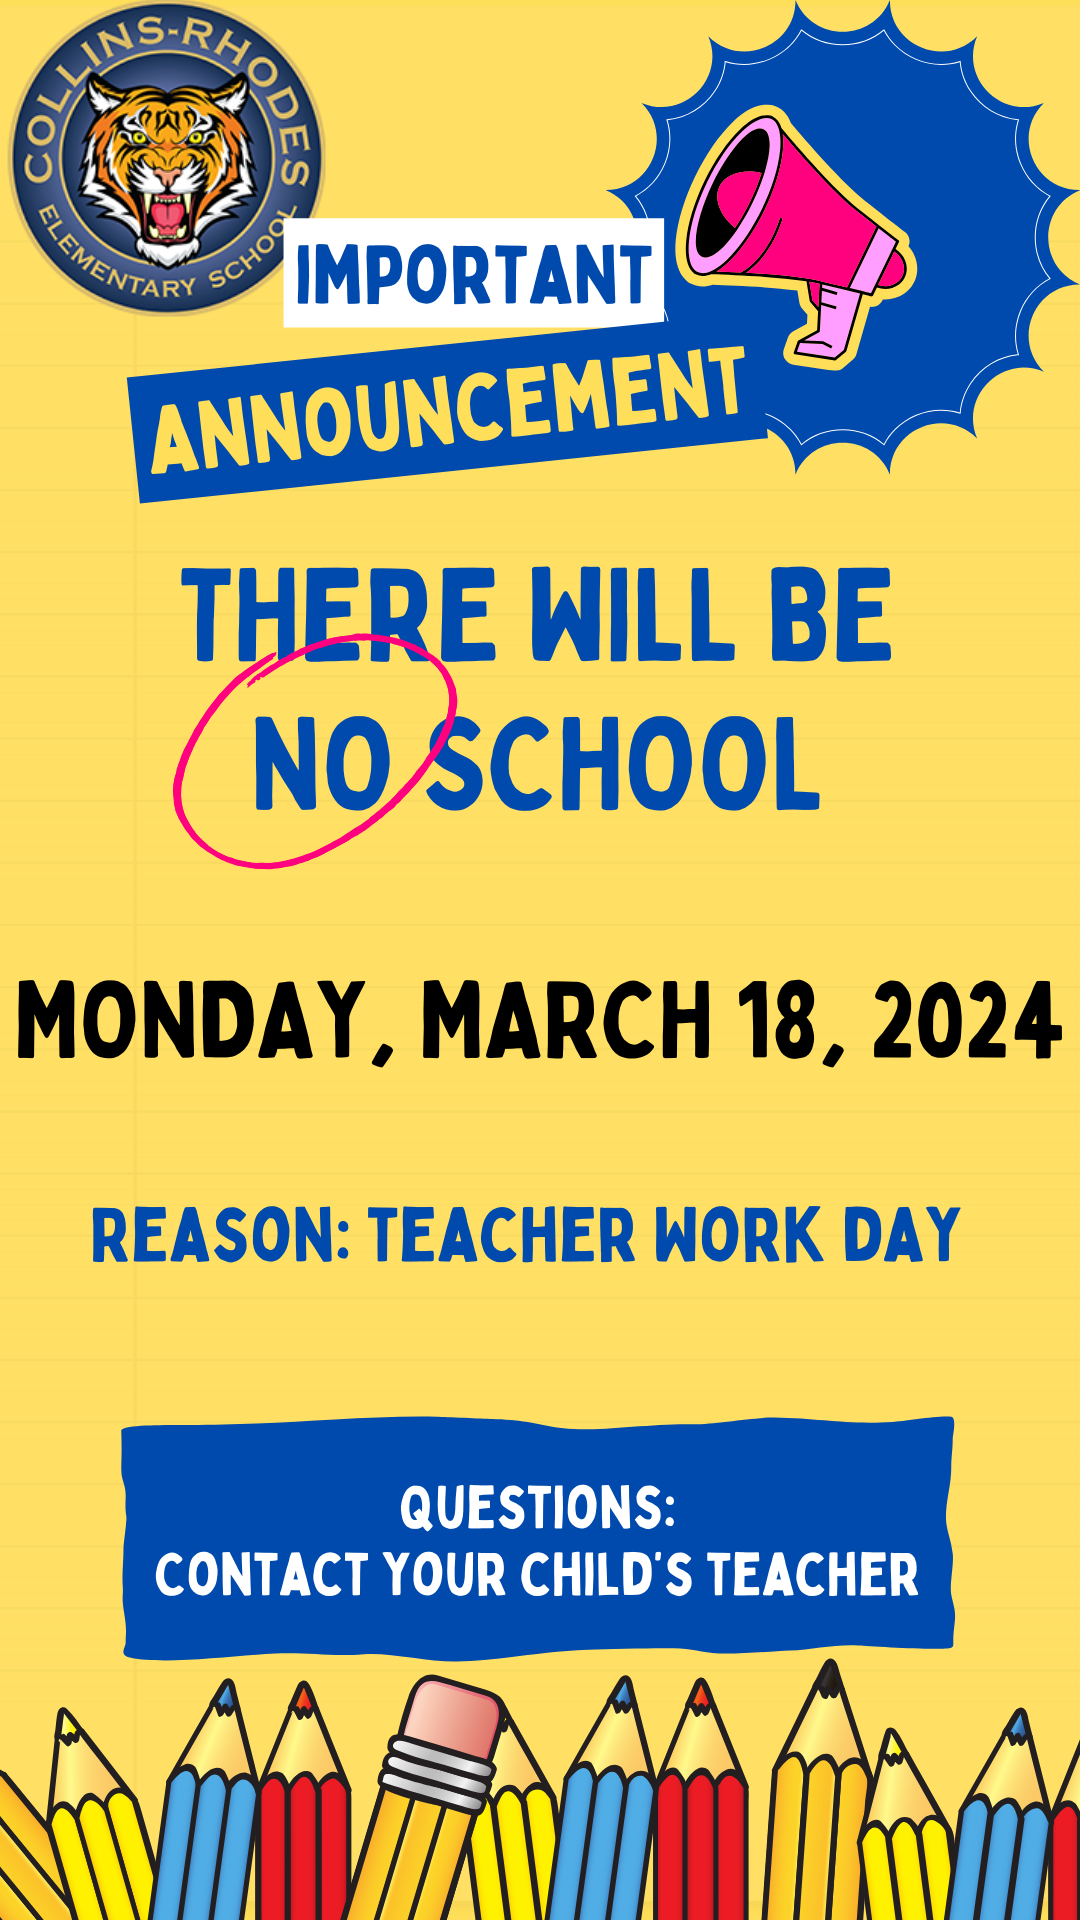 No School Monday March 18, 2024